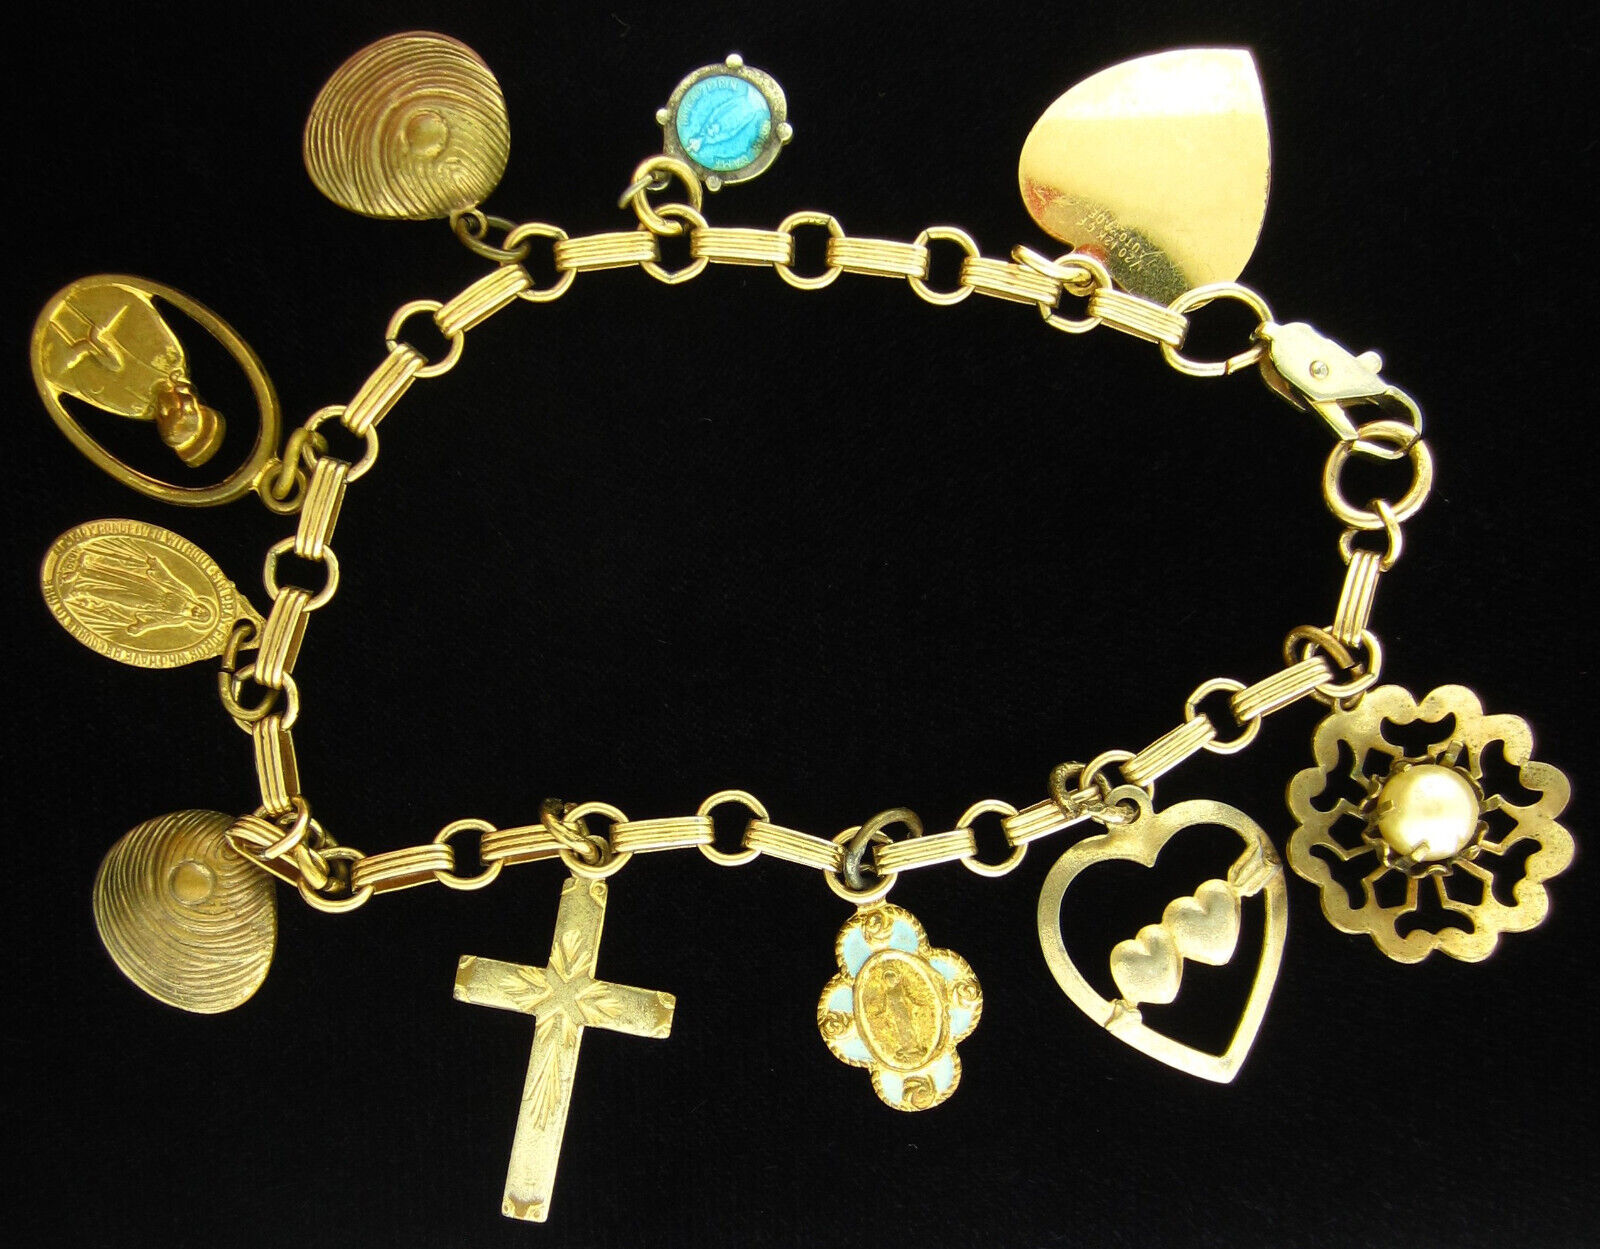 Vintage Catholic Gold Tone Bracelet with 10 Charms Attatched Religious Catholic